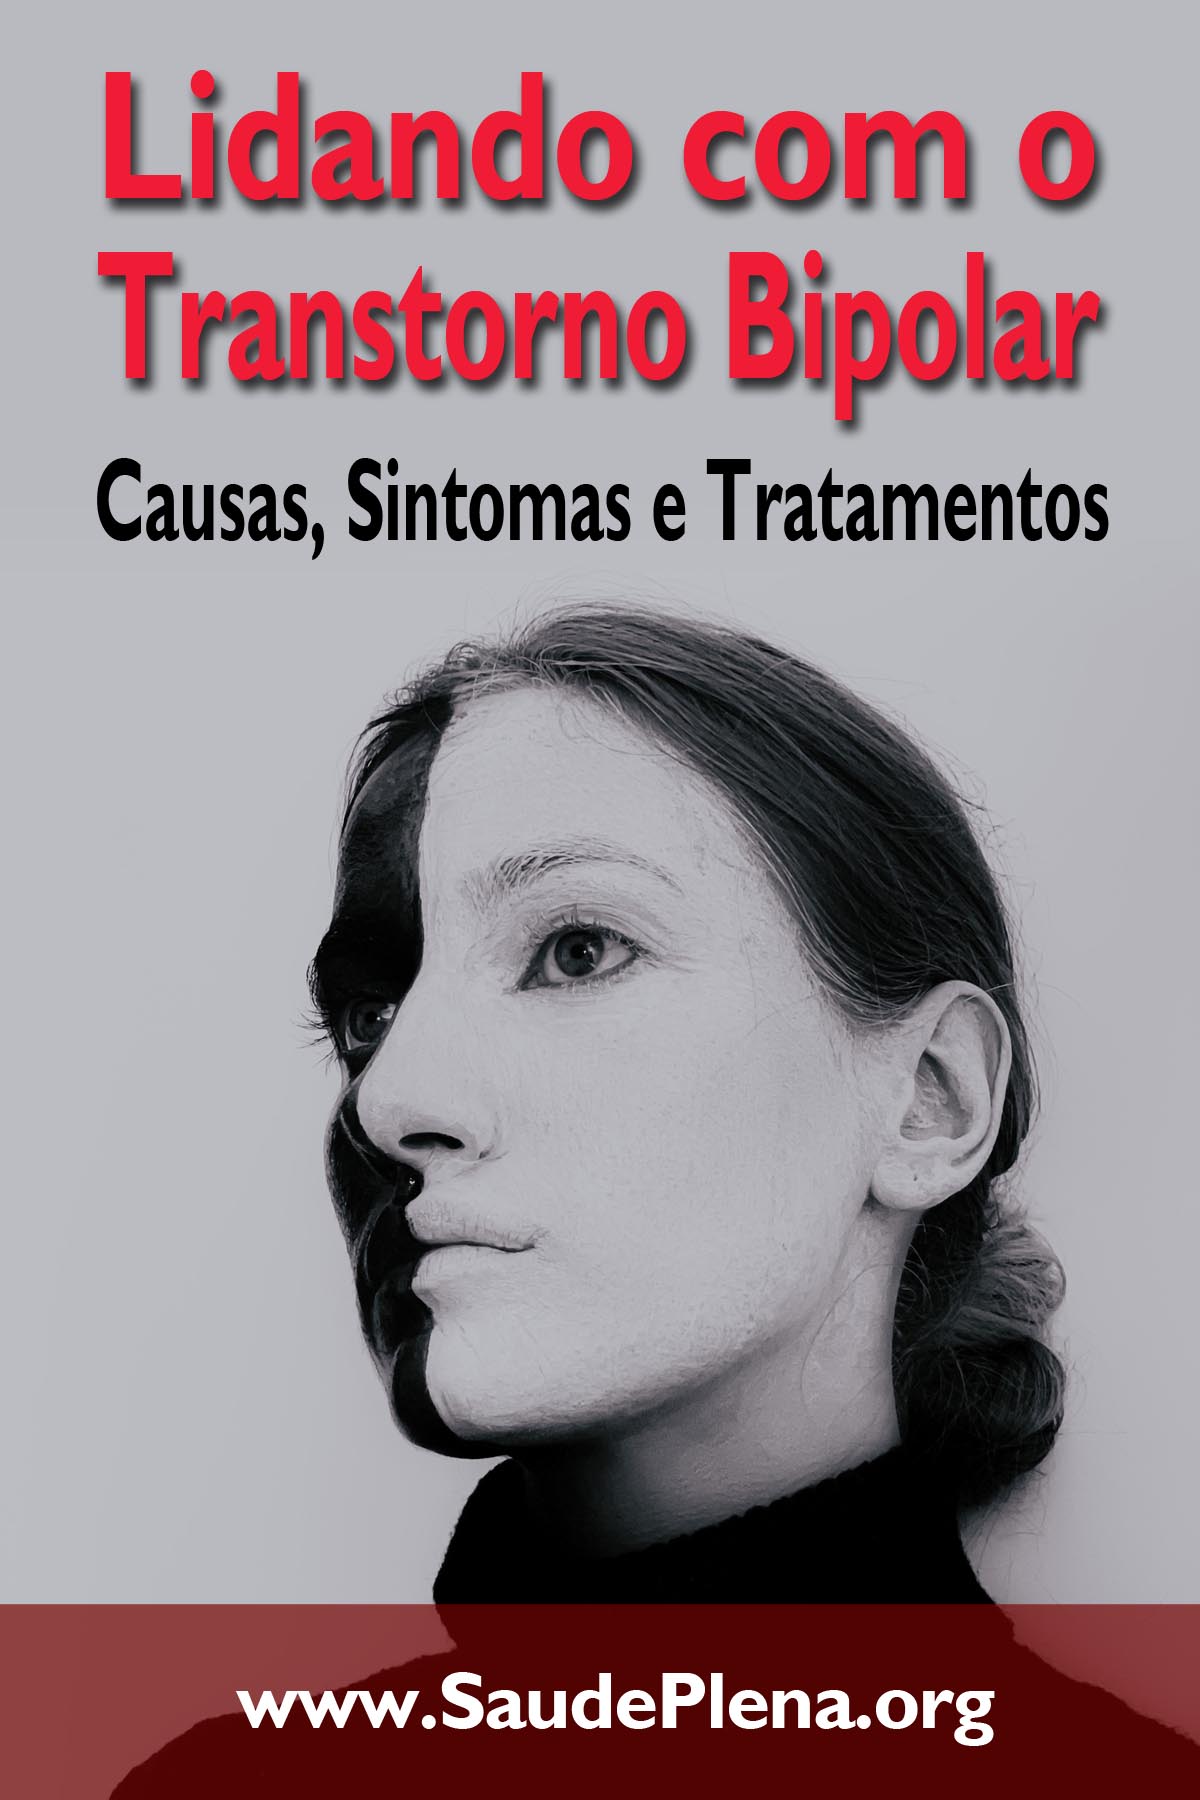 Lidando com o Transtorno Bipolar: Causas, Sintomas e Tratamentos 